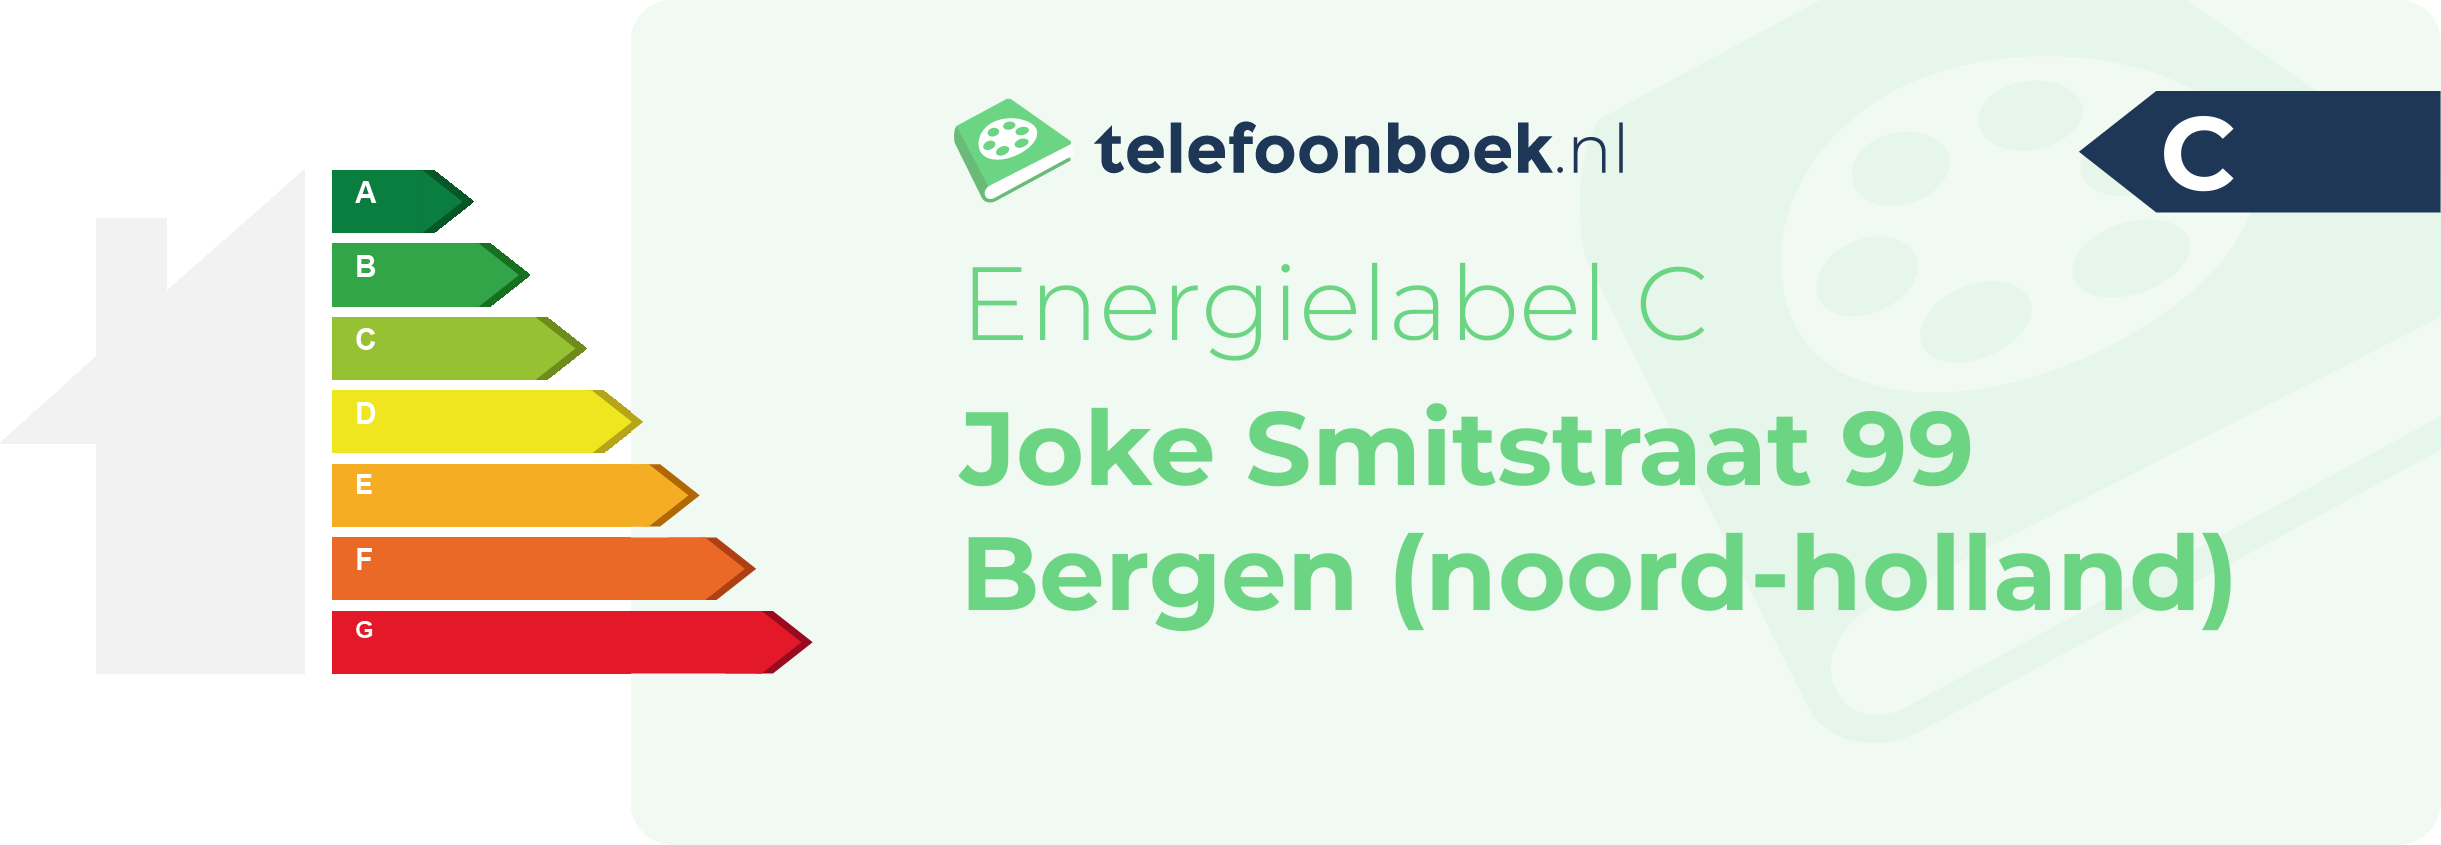 Energielabel Joke Smitstraat 99 Bergen (Noord-Holland)